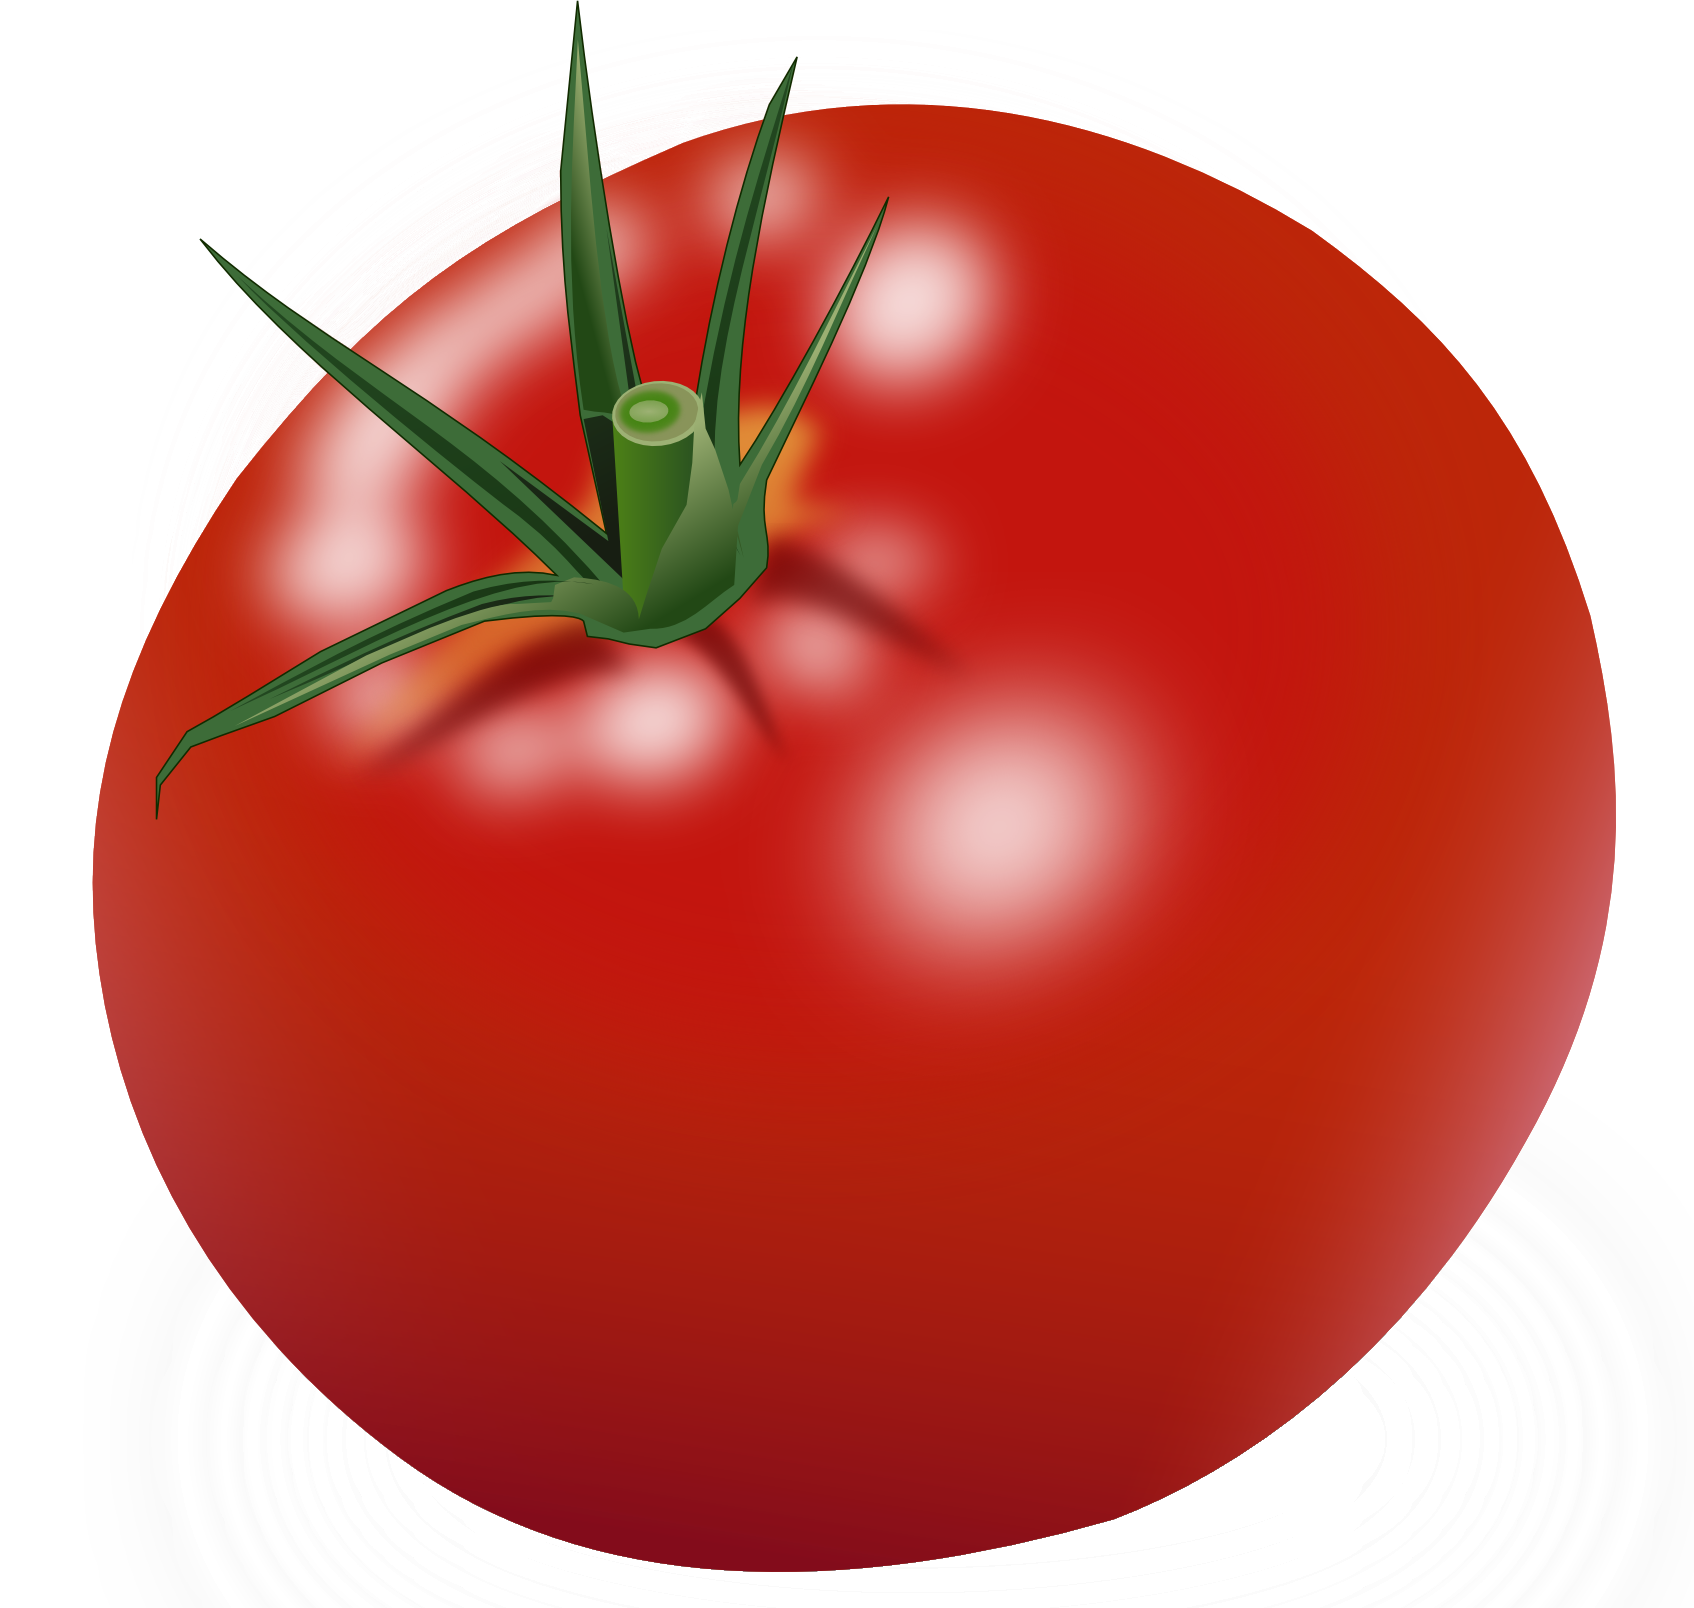 Tomat merah besar